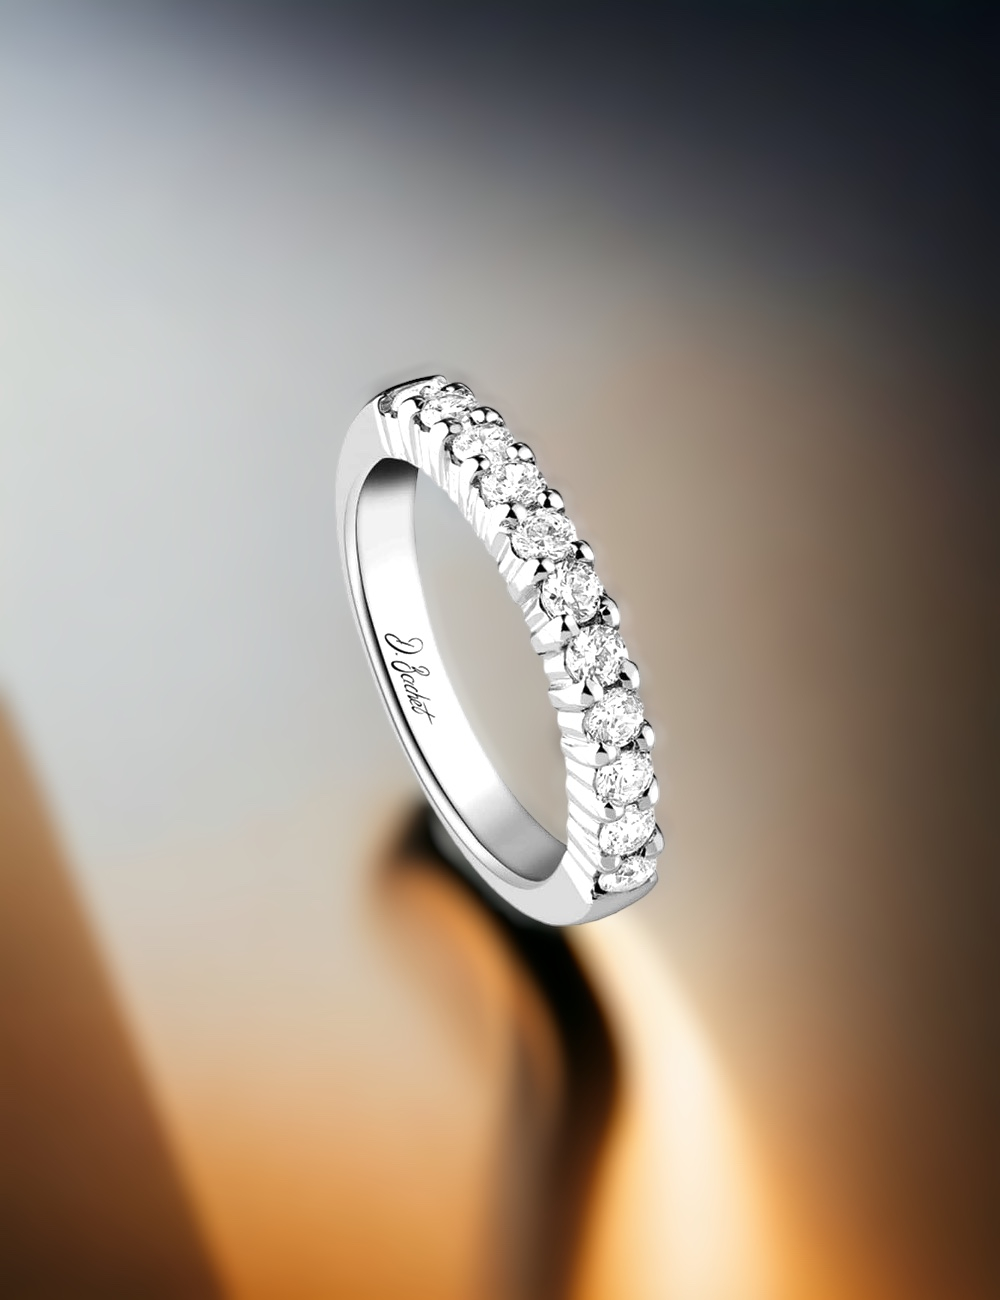 Alliance femme avec diamants blancs sertis griffes étincelants, soulignant un artisanat délicat.